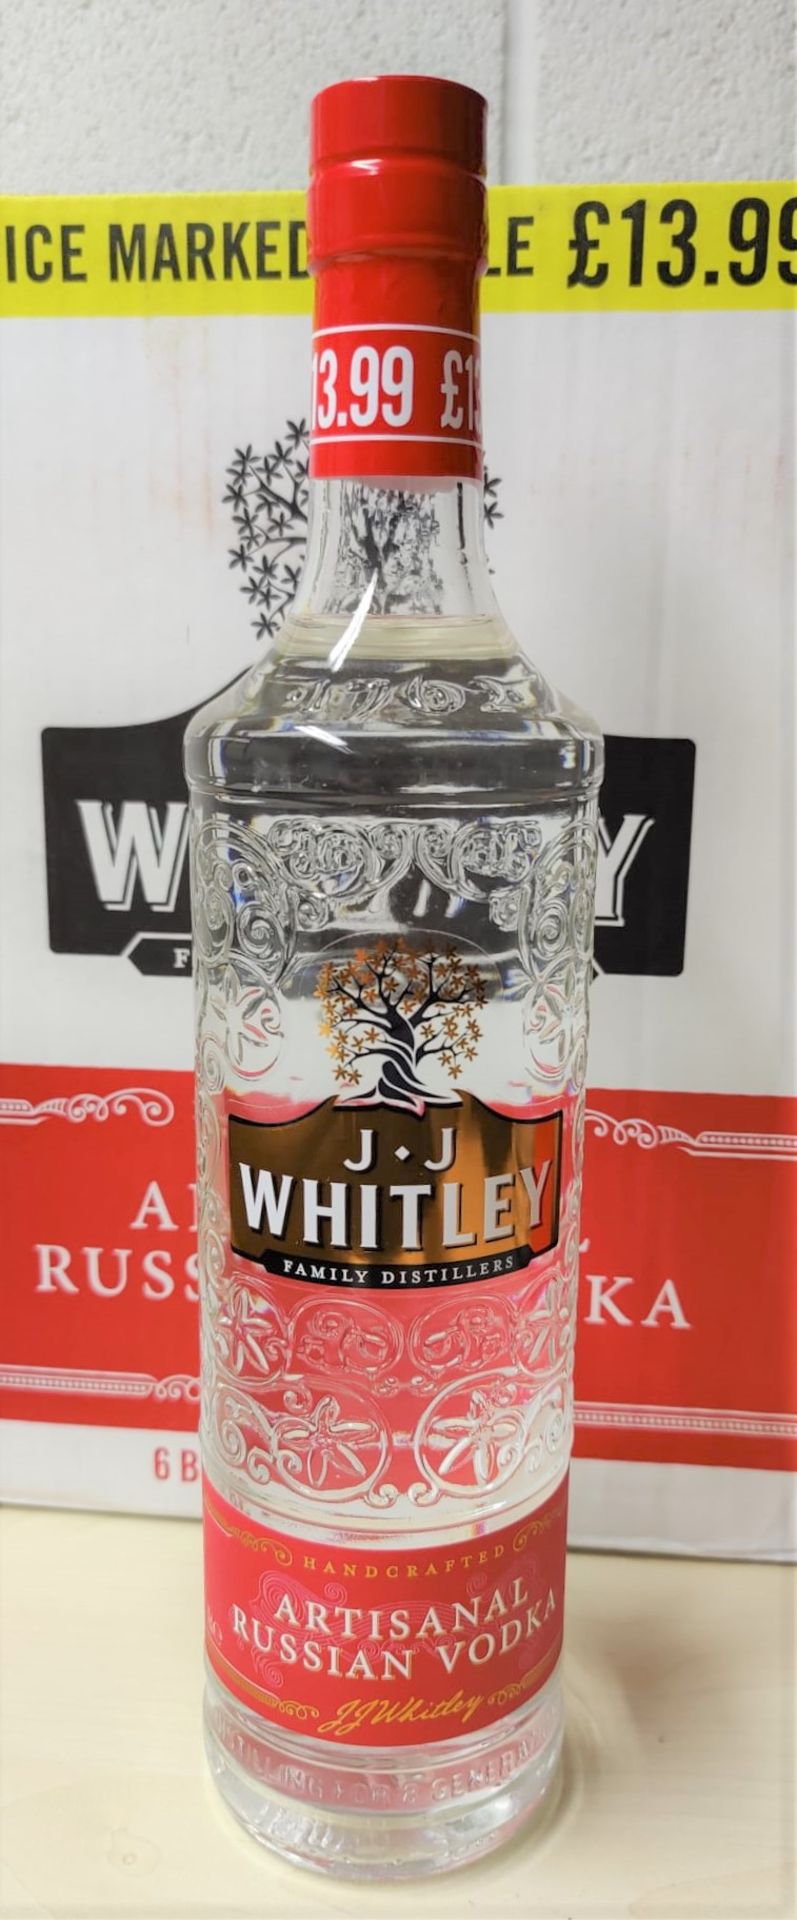 1 x Bottle of J.J Whitley Artisanal 70cl Vodka - Multi Award Winning Vodka - 38% Volume - New